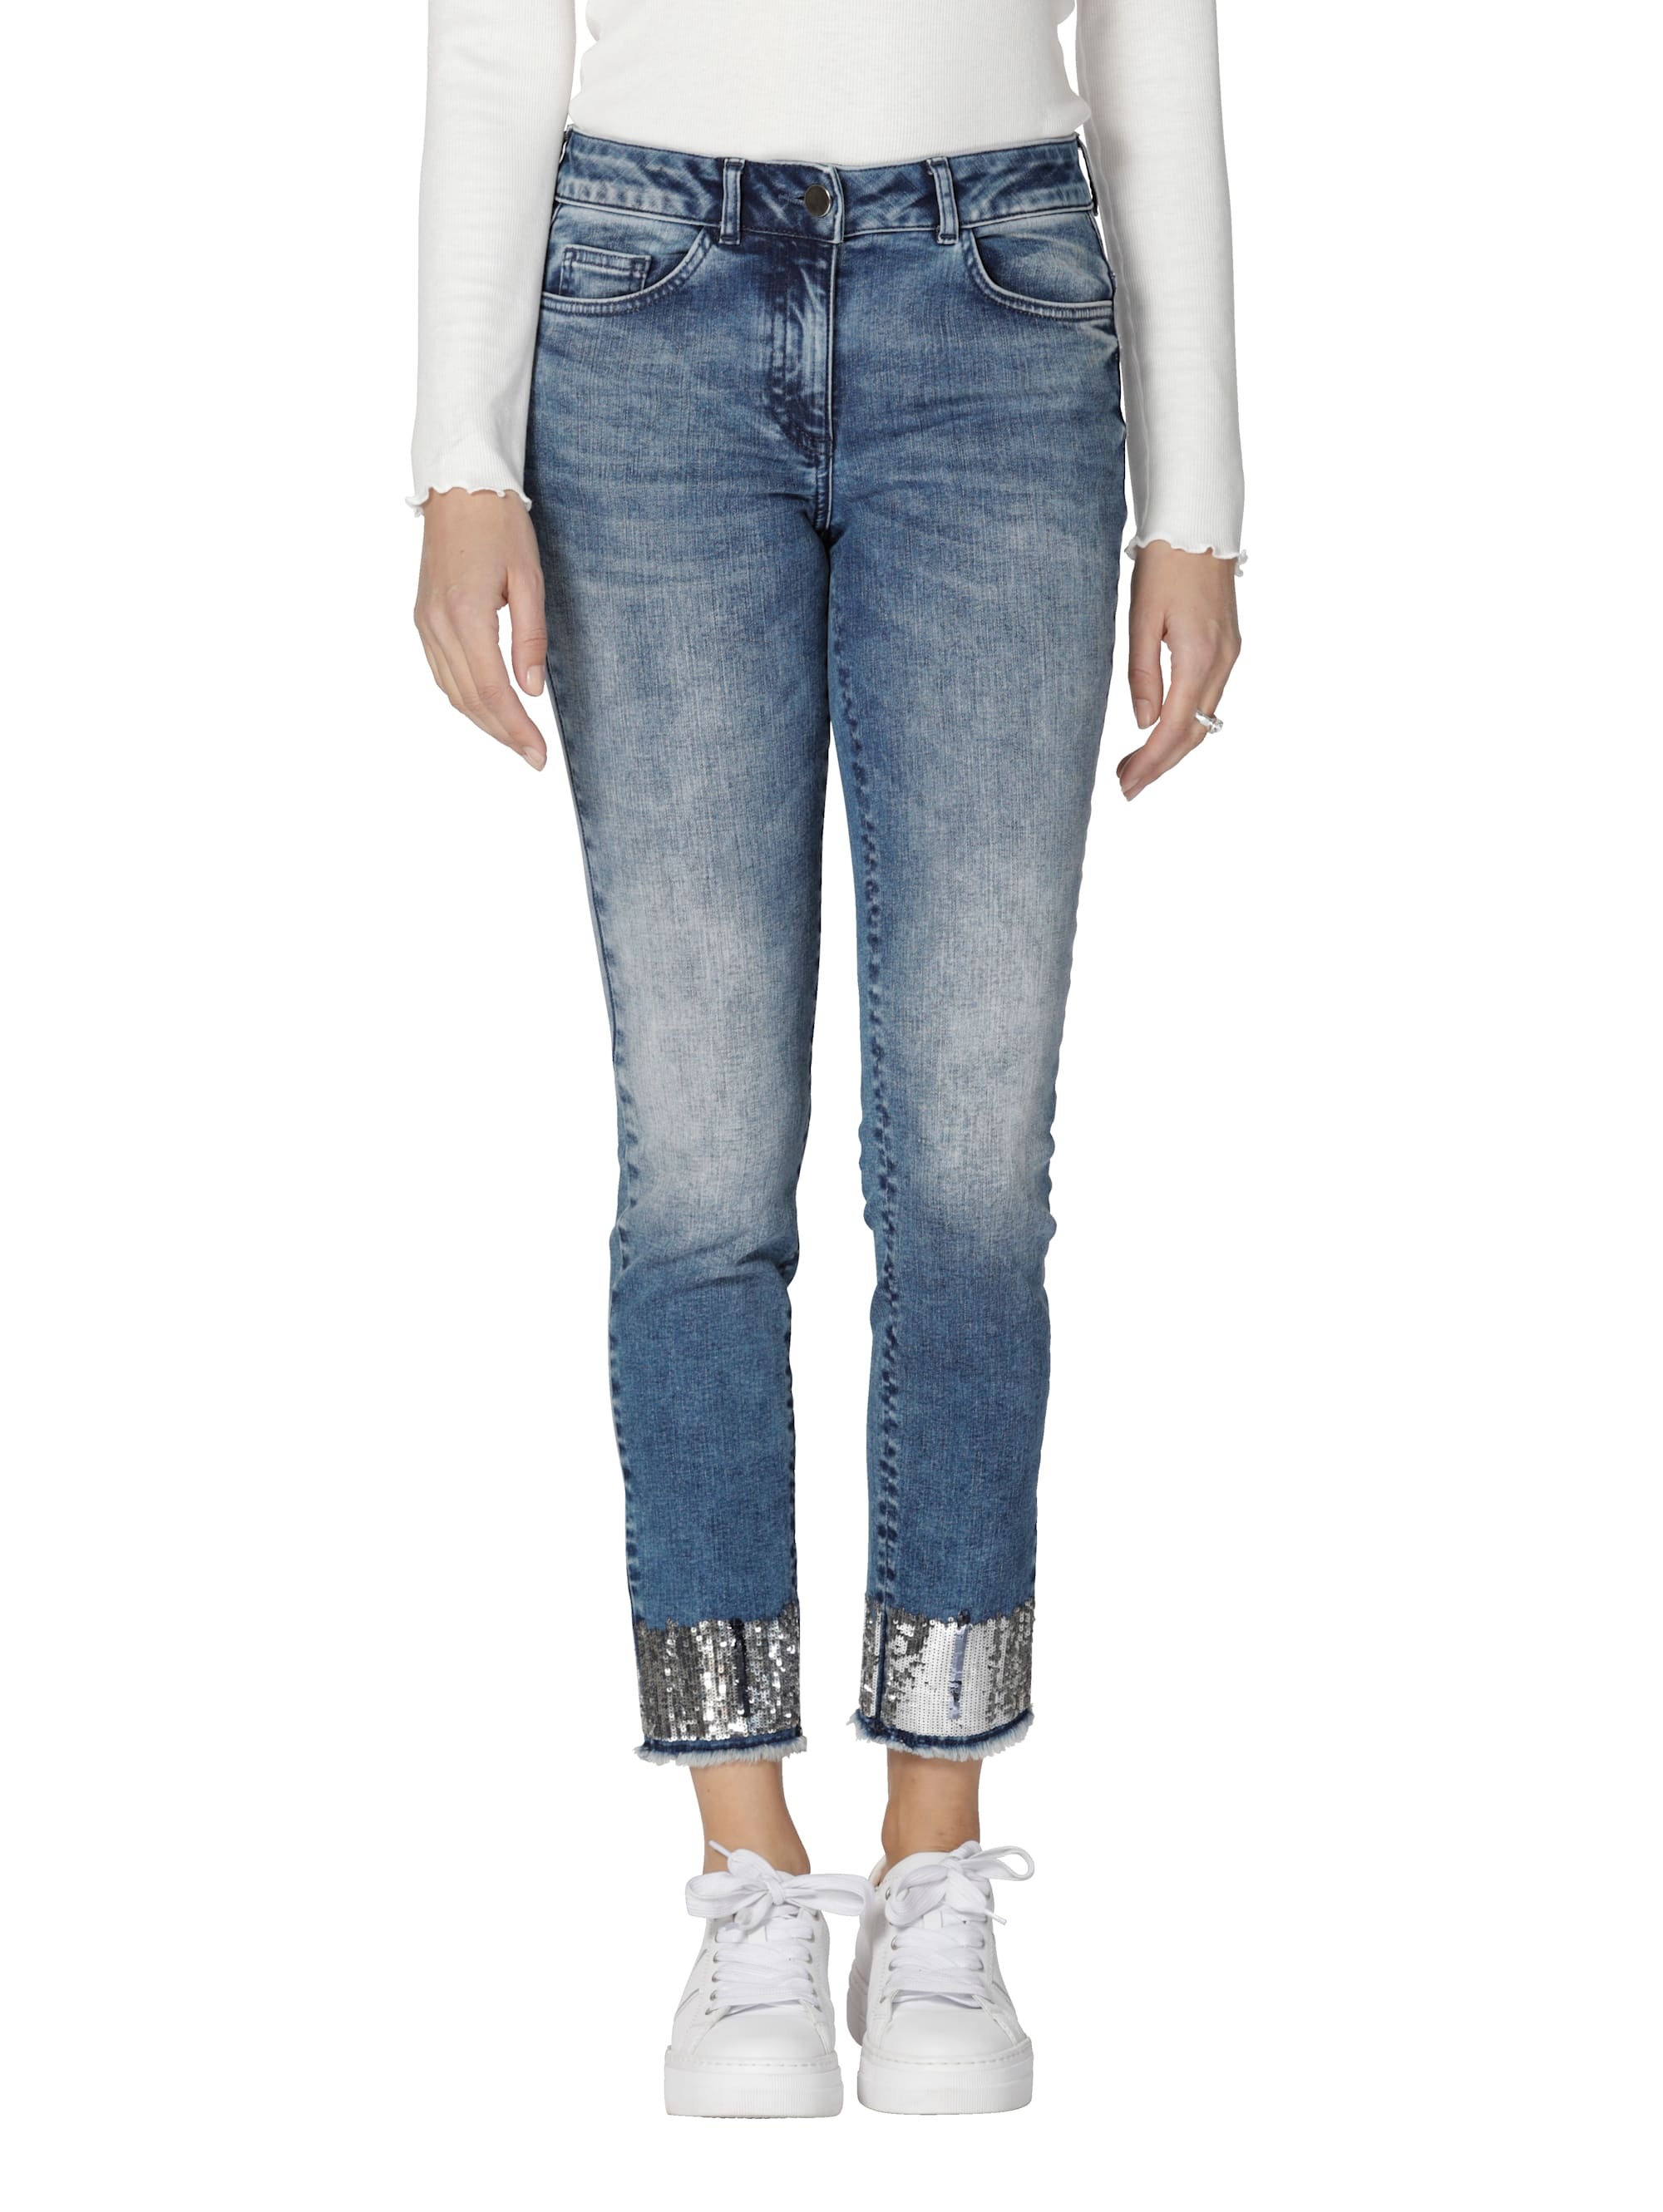 Jeans Mit Fransensaum Fur Damen Online Kaufen Baur